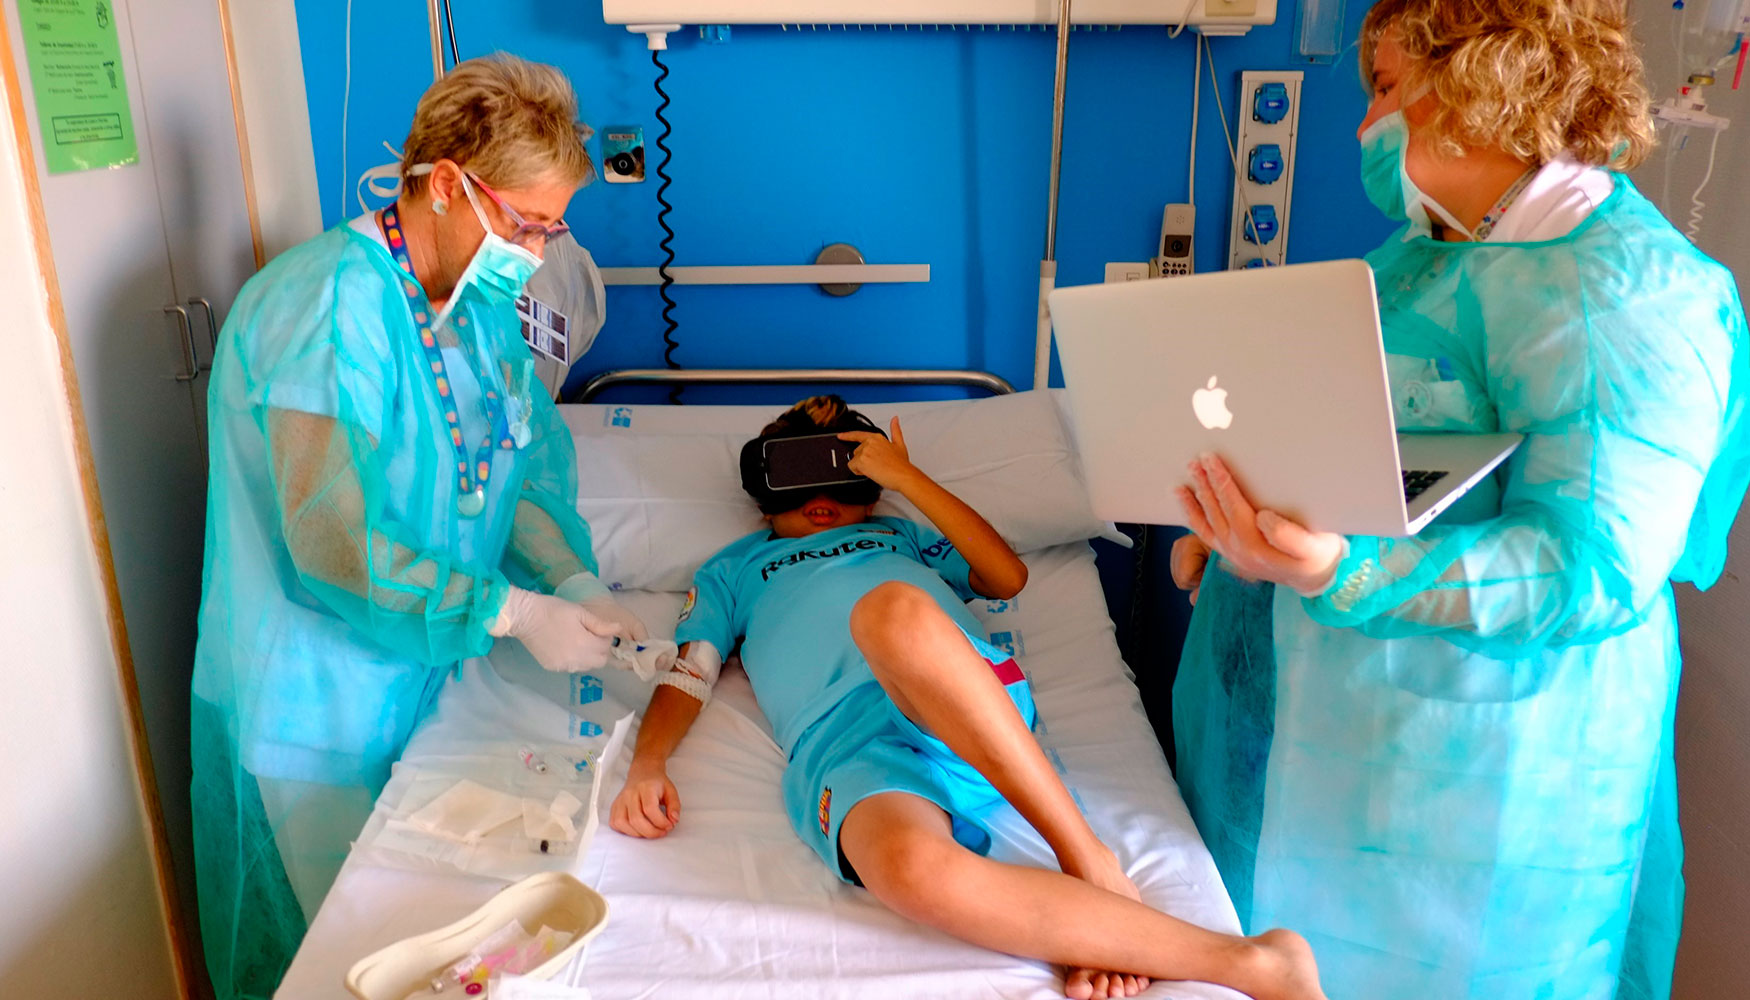 Aplicar la realidad virtual como estimulante y distractor para reducir el dolor que sienten los nios en sus recurrentes visitas al hospital es el...